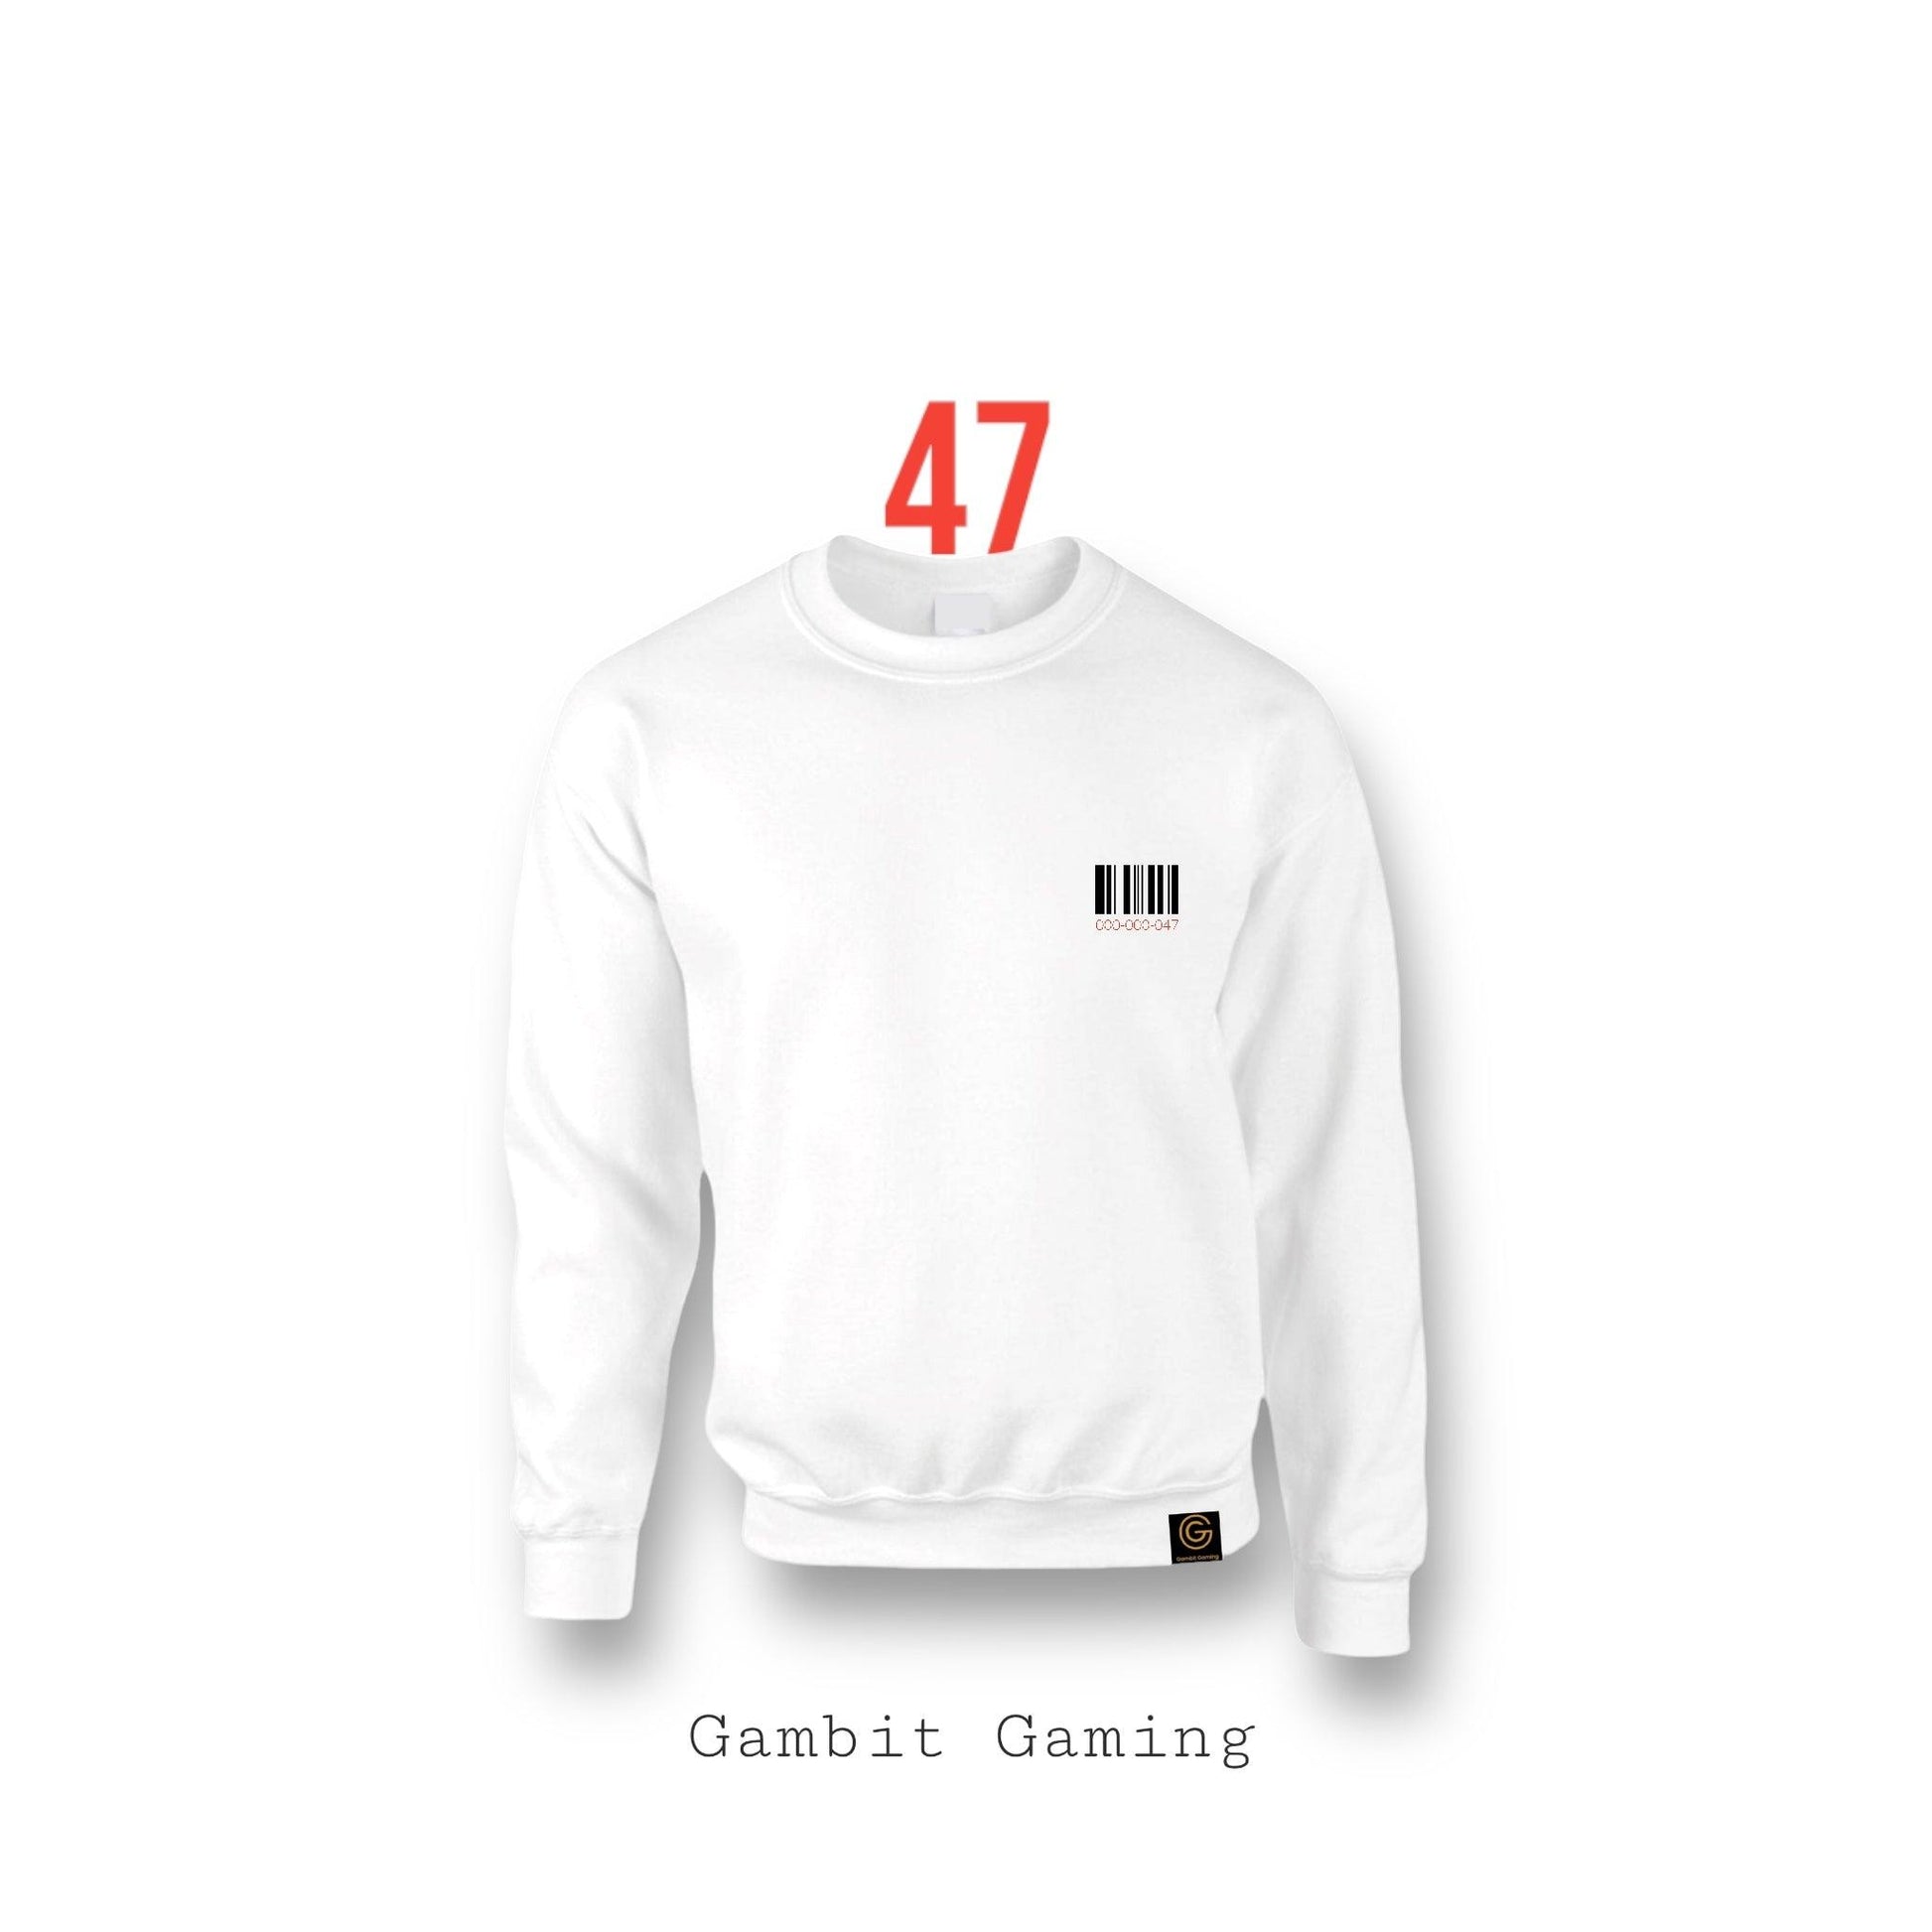 47 Sweater - Gambit Gaming